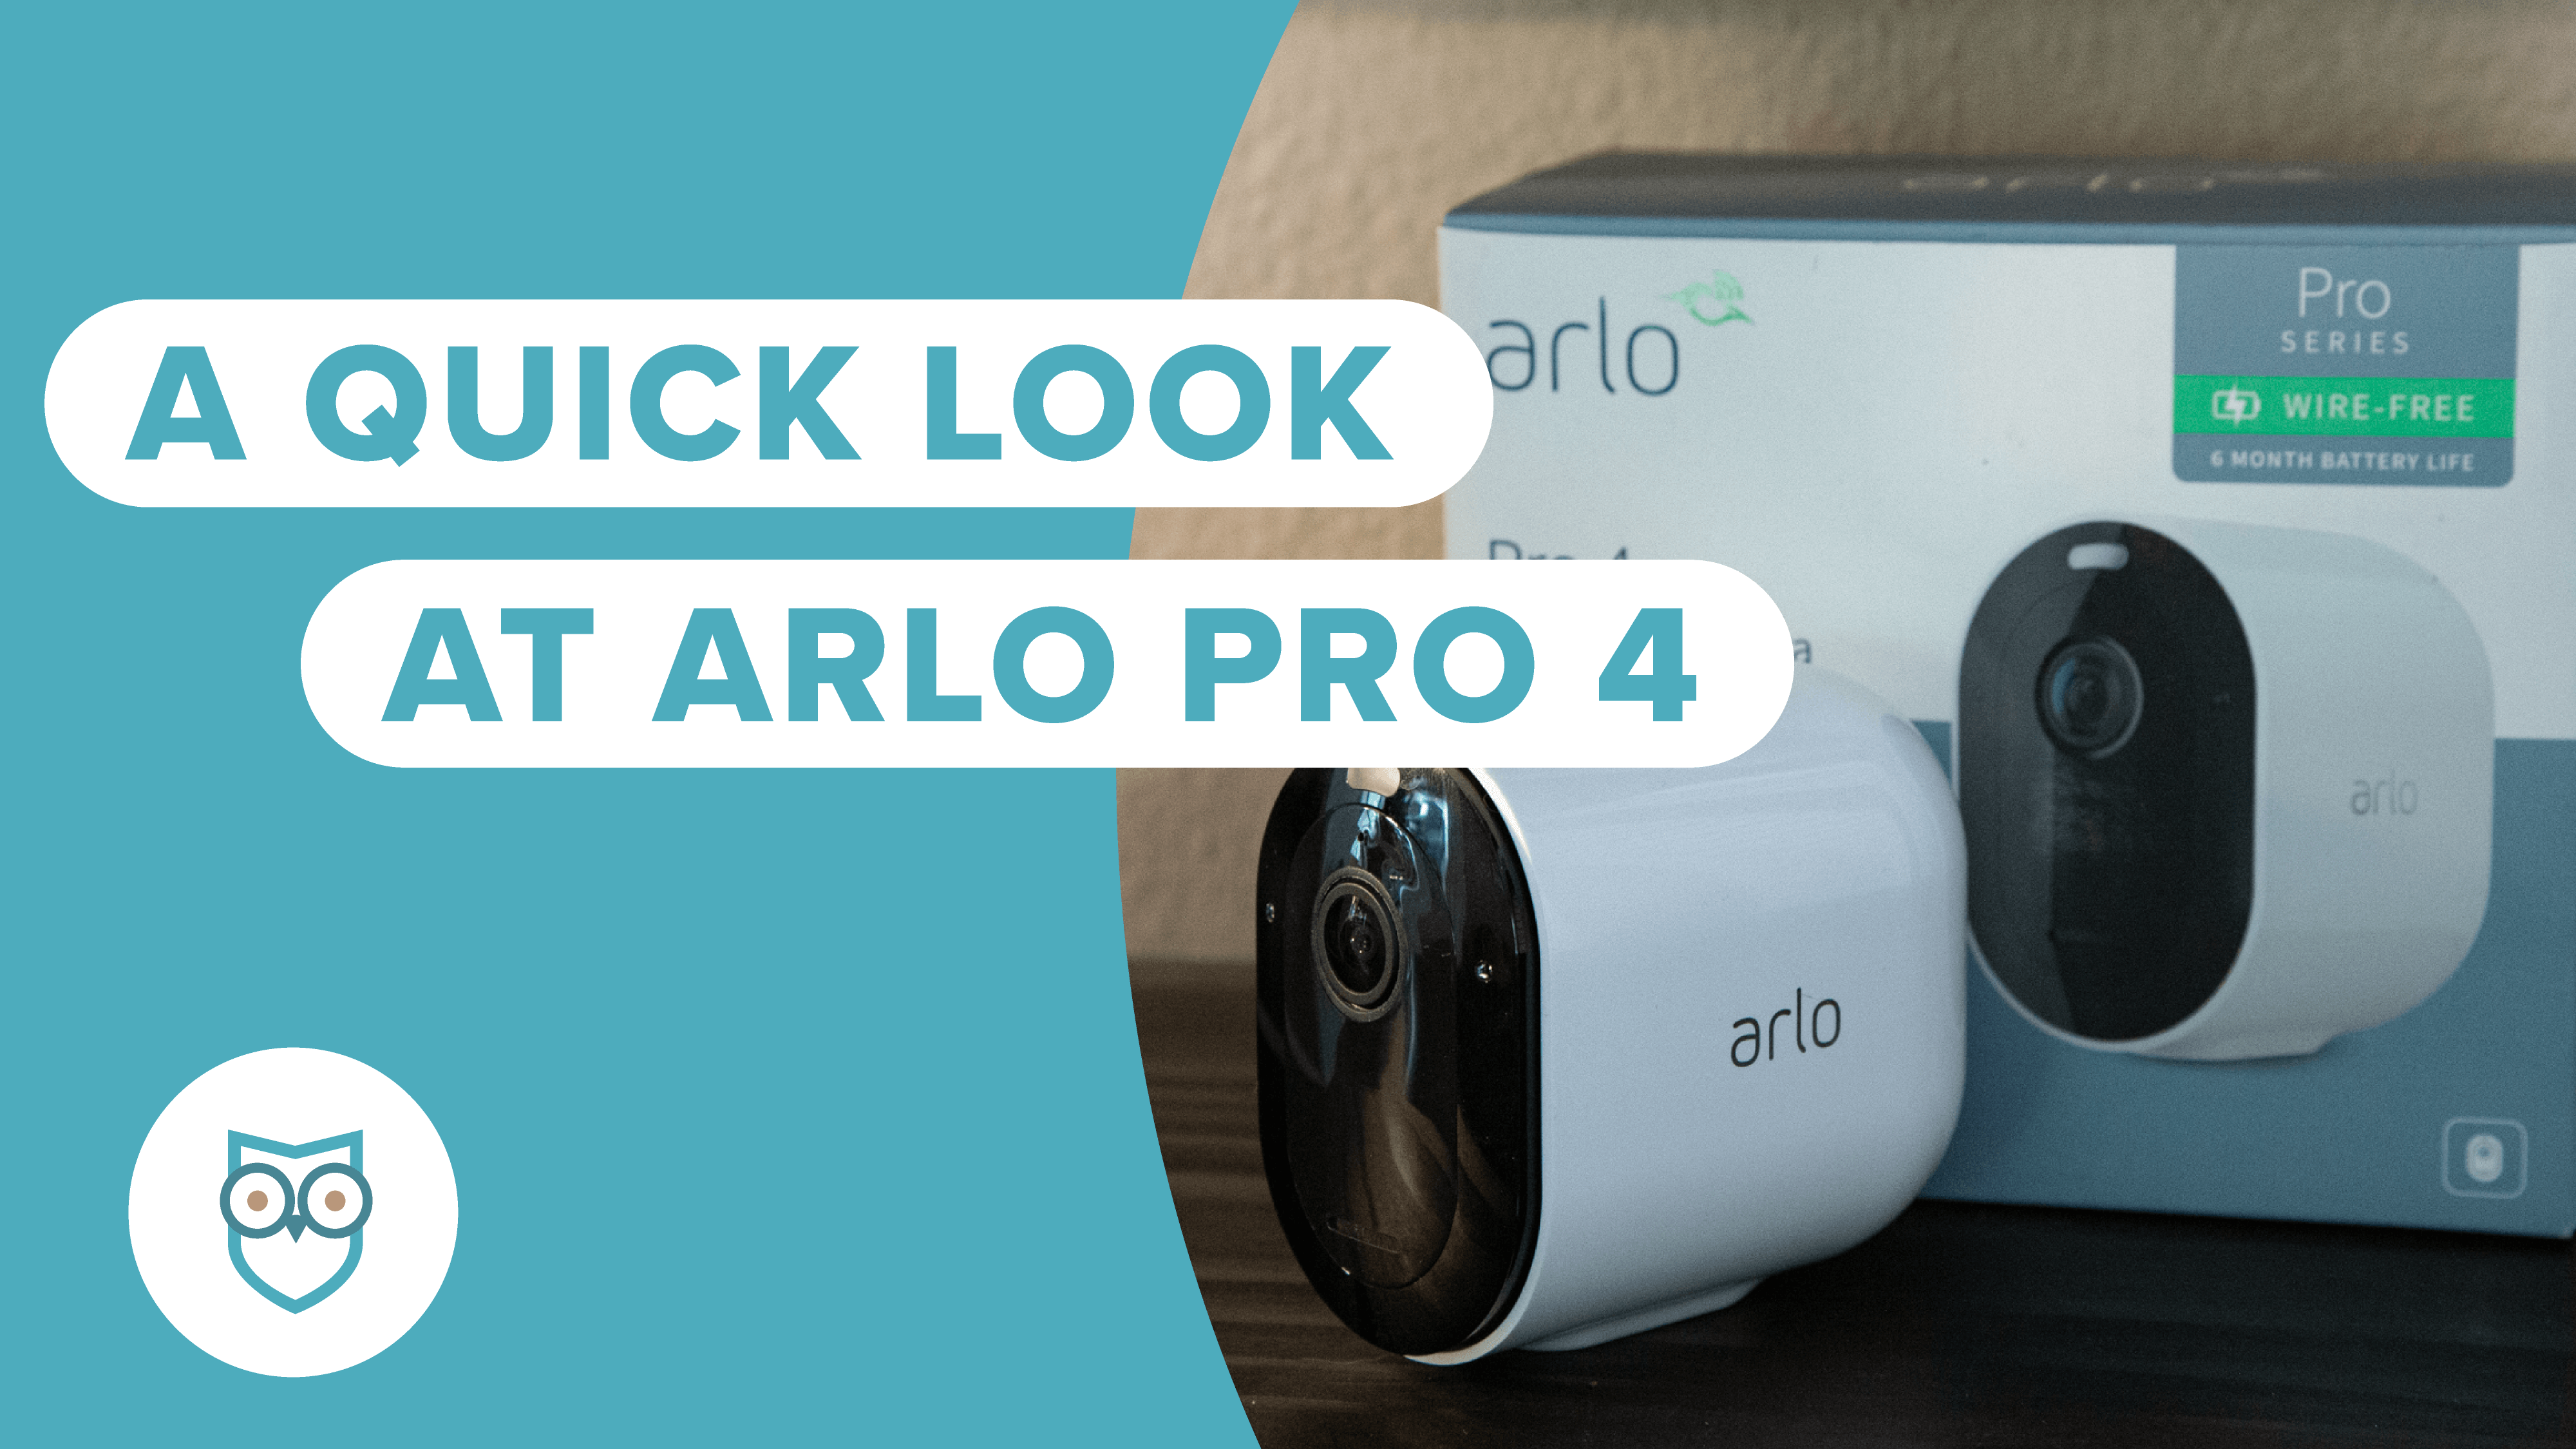 Netgear Arlo Pro review: Netgear's Arlo Pro cam brings smart